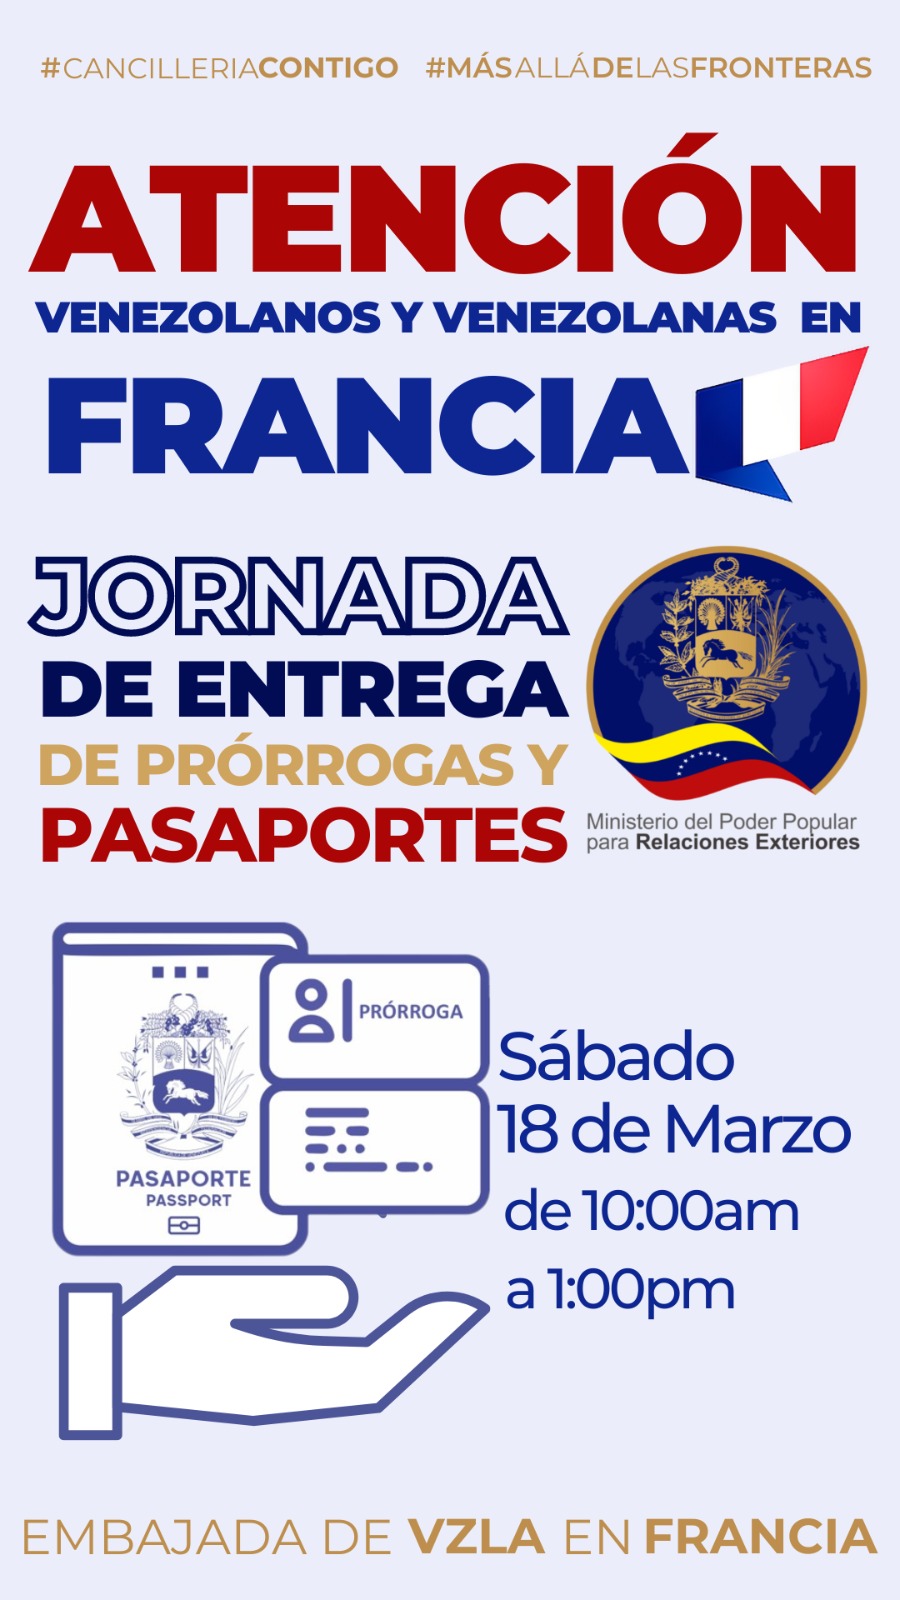 Jornada especial de entrega de prórrogas y pasaportes a venezolanos residentes en Francia el sábado 18 de marzo